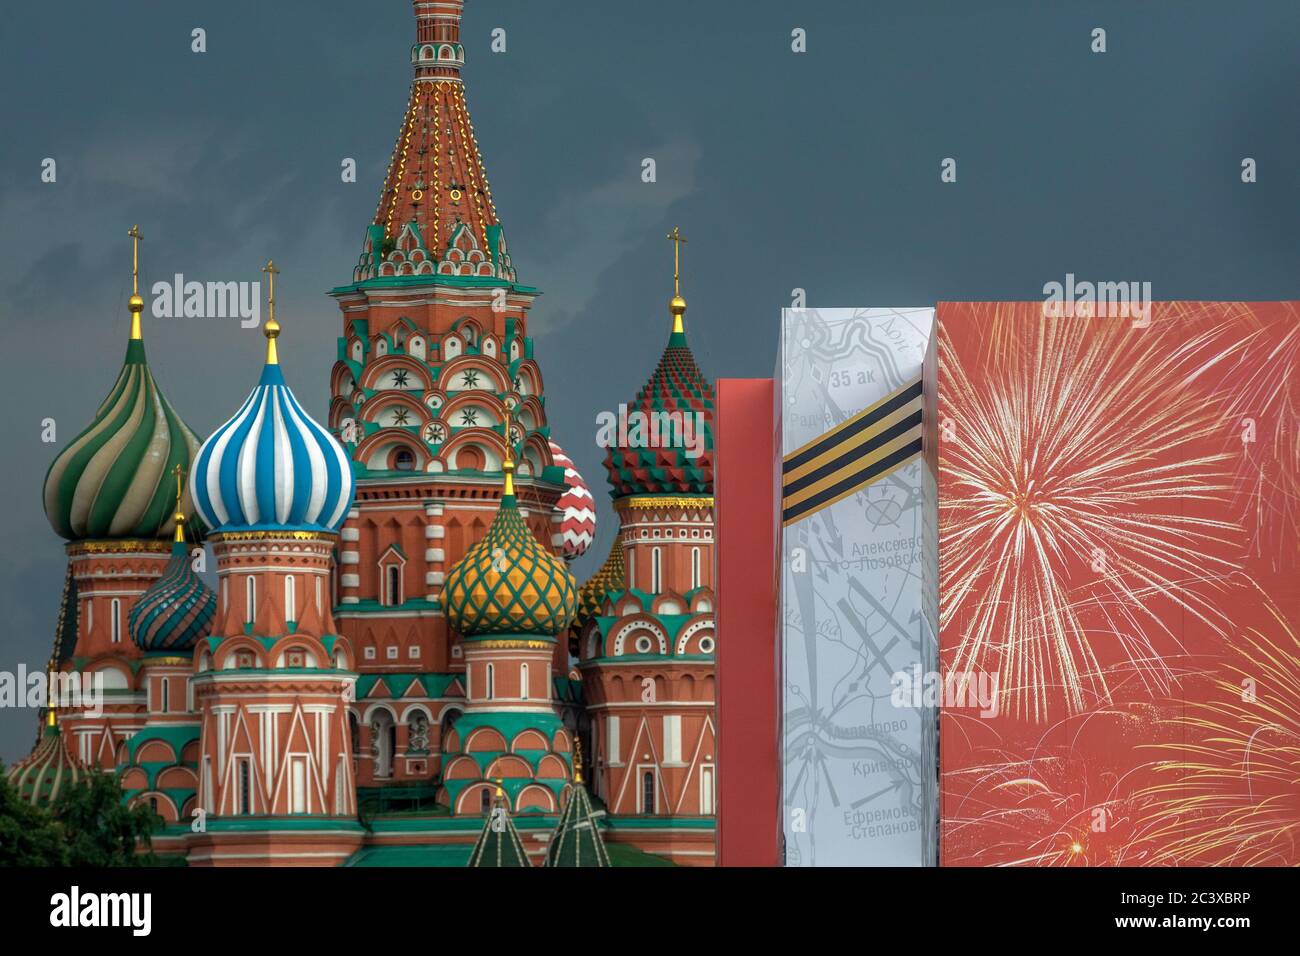 Moskau, Russland. 19. Juni 2020 EINE Dekoration des Roten Platzes im Zentrum von Moskau, die der Militärparade anlässlich des 75. Jahrestages des Sieges über Nazi-Deutschland im Großen Vaterländischen Krieg von 1941-1945 gewidmet ist, auf dem Hintergrund der Basilius-Kathedrale Stockfoto